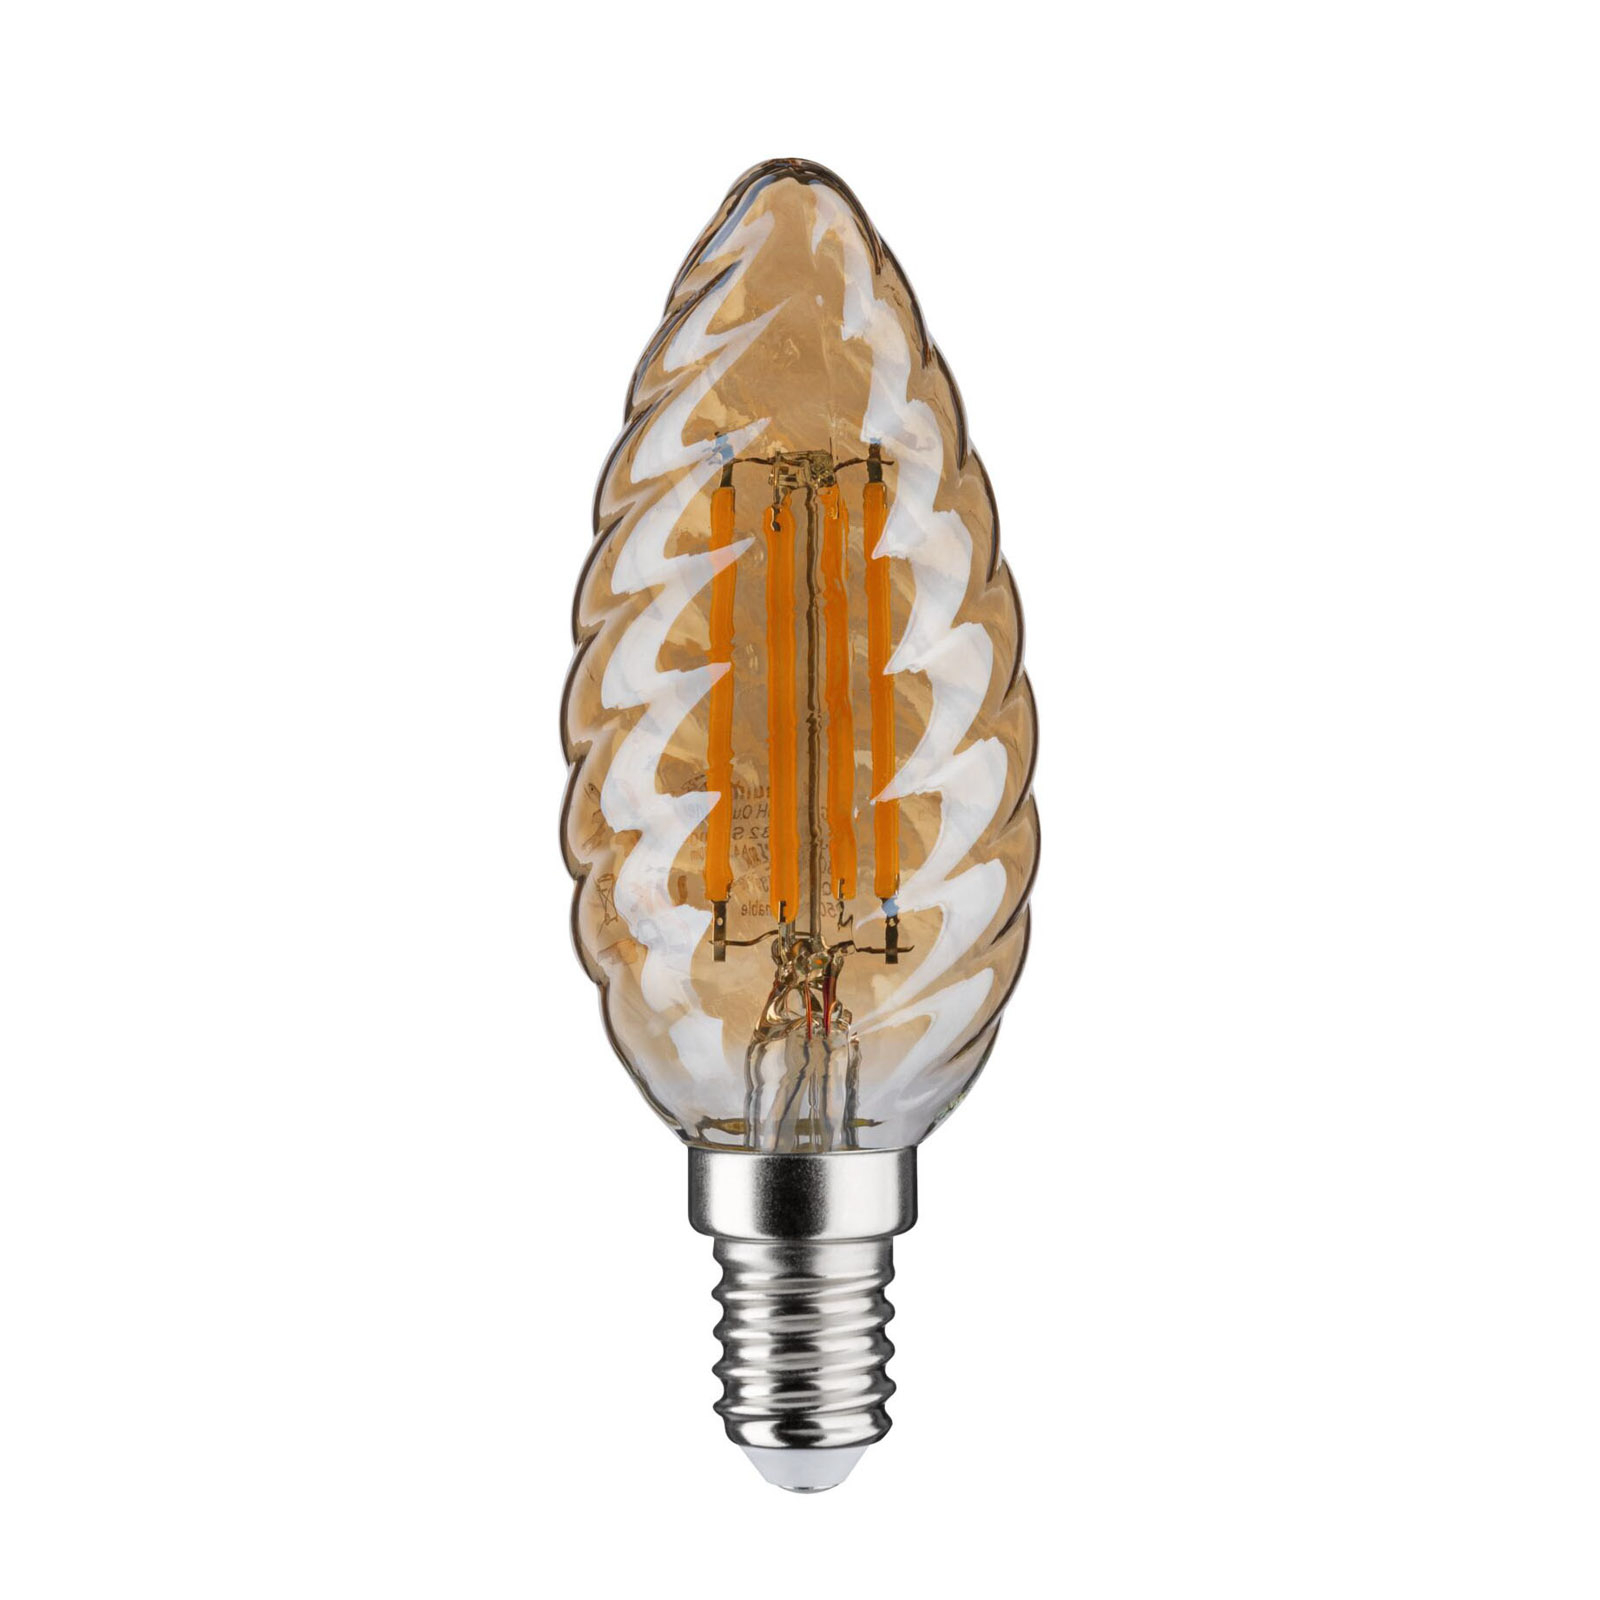 LED-Kerzenlampe E14 4,7W gold gedreht dimmbar